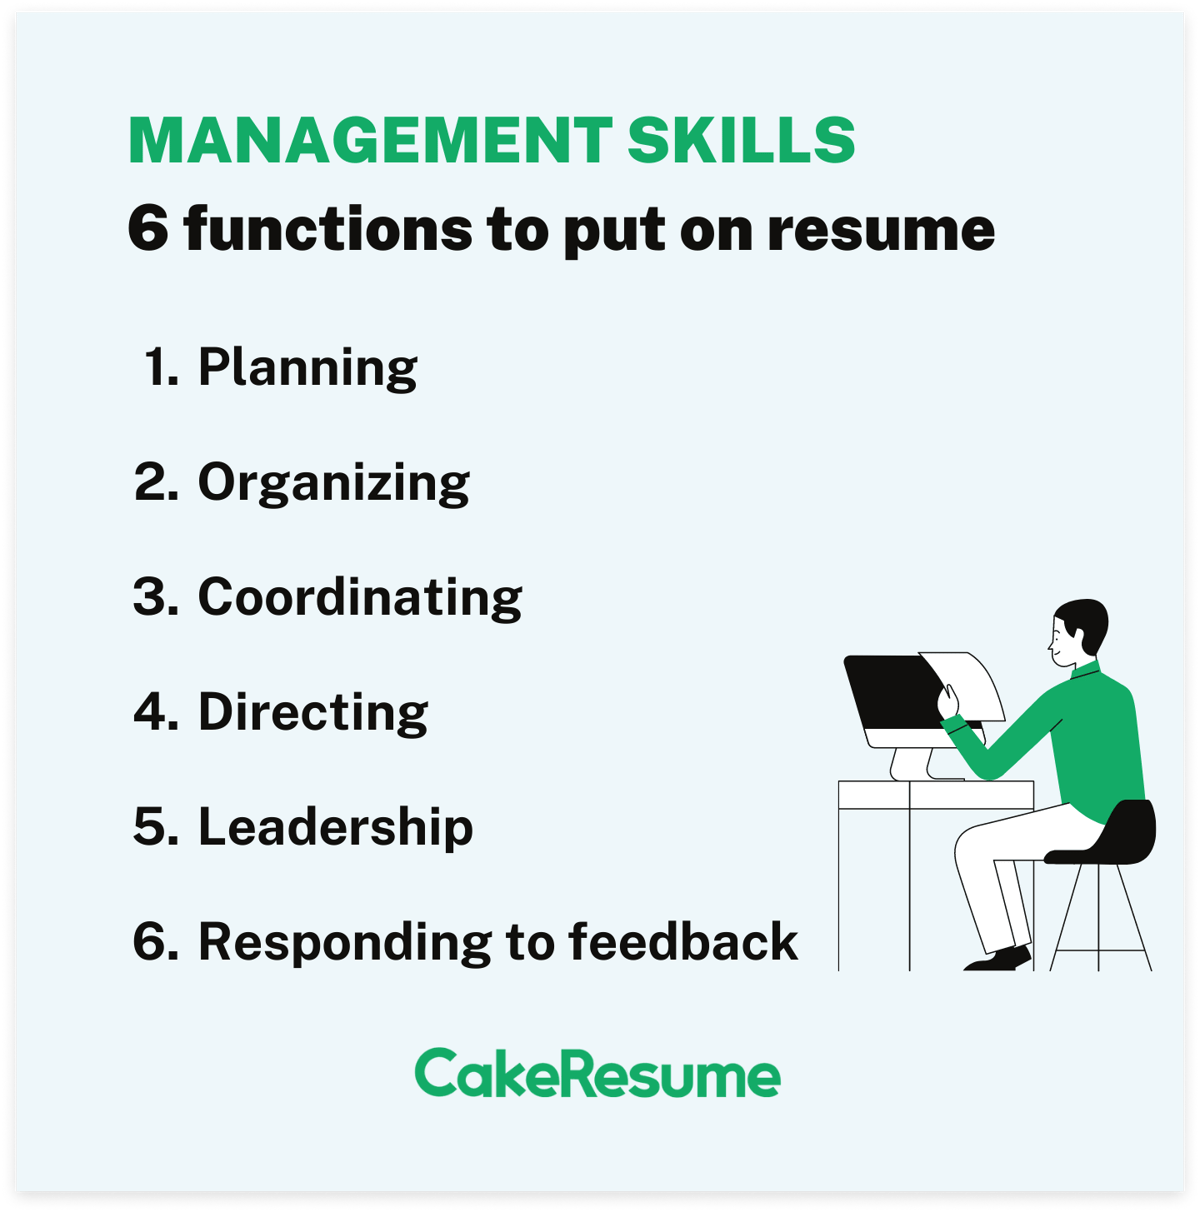 Management Skills for Resume